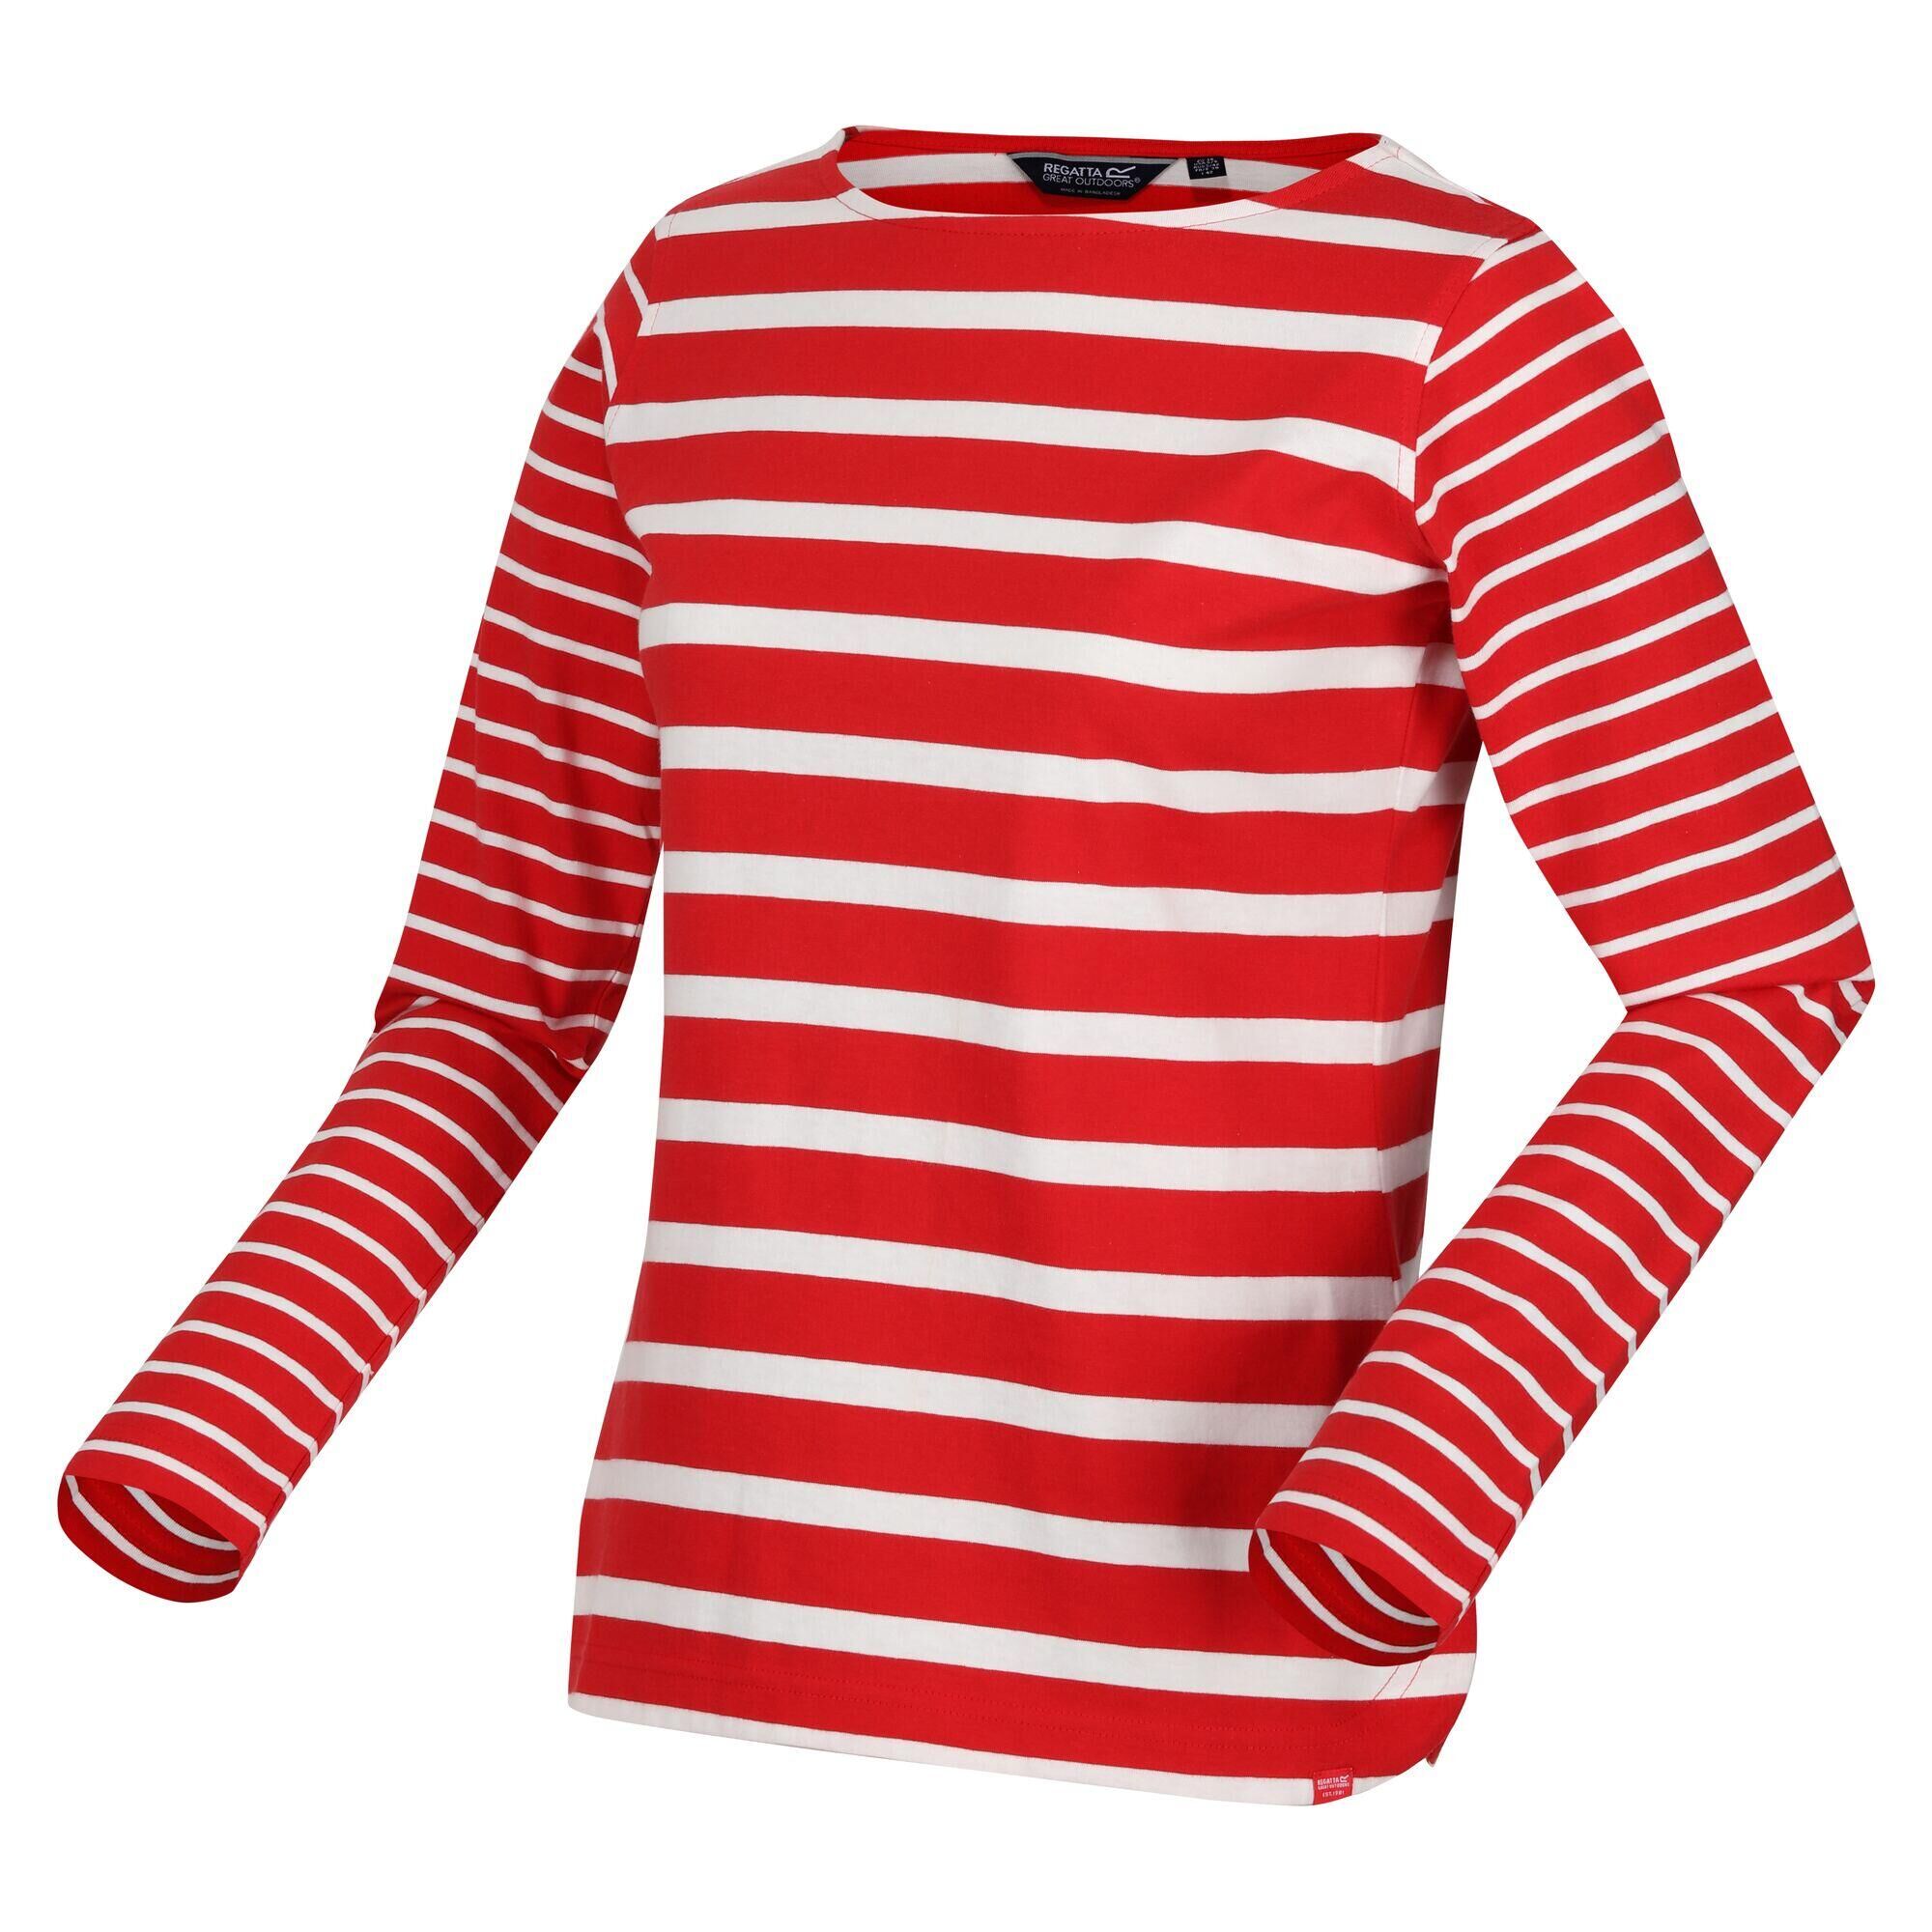 REGATTA Women's Farida Striped T-Shirt